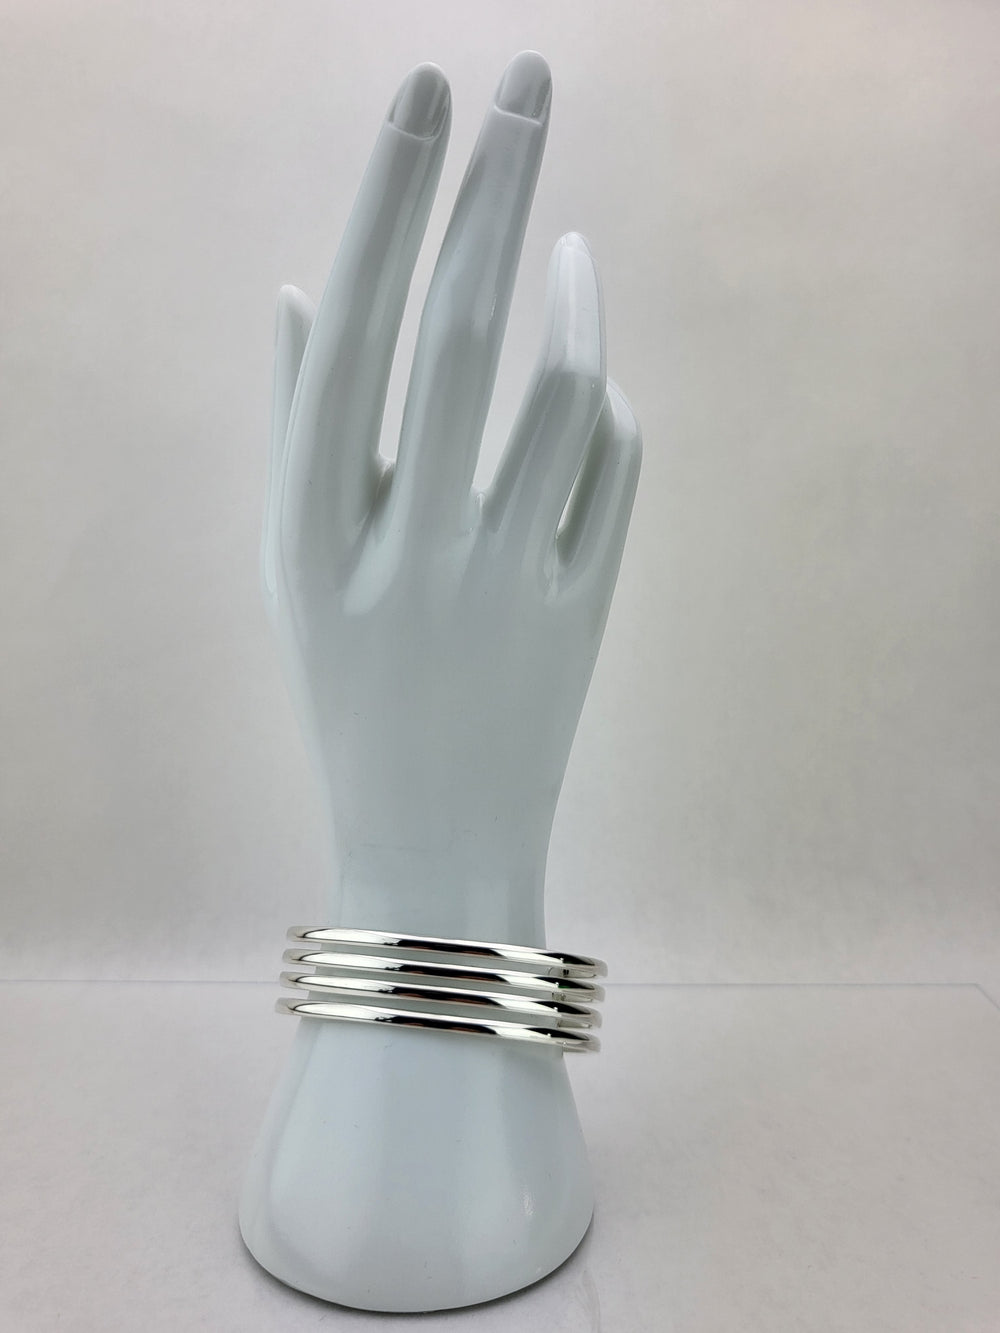 4 row cuff on mannequin wrist